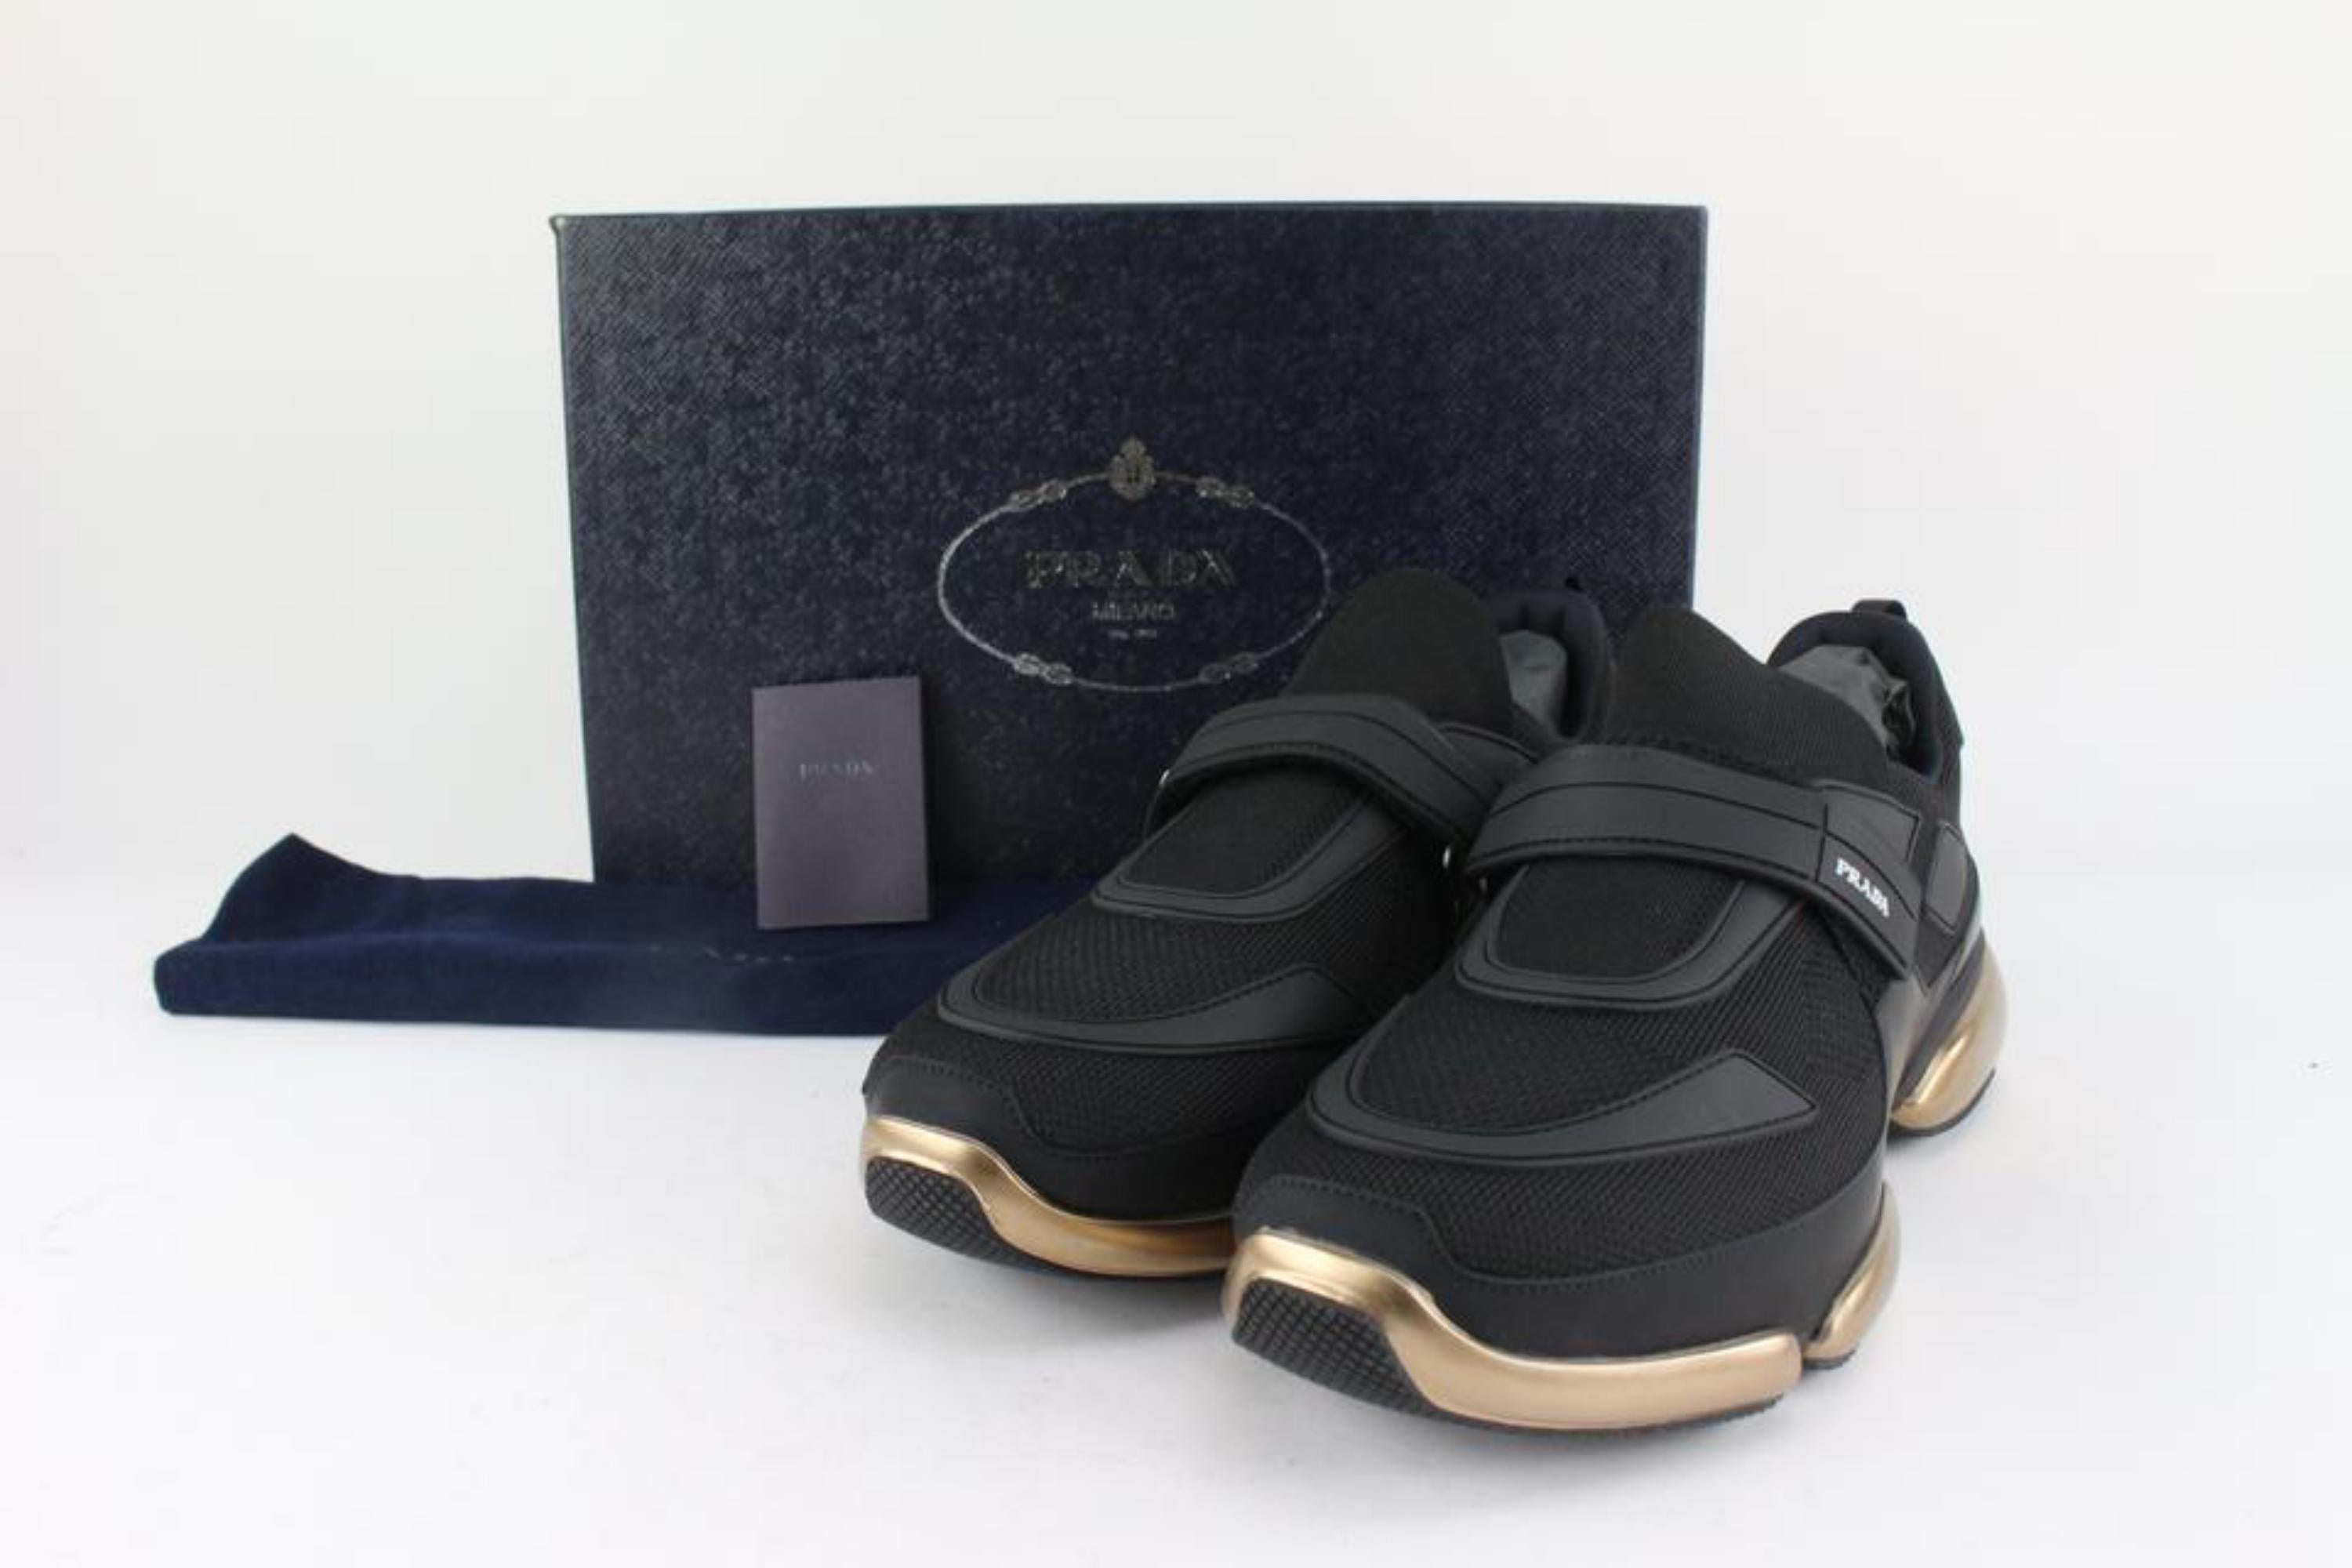 Prada Men's 11 20g064 Black x Gold Cloudbust Sneakers 1116p48 5